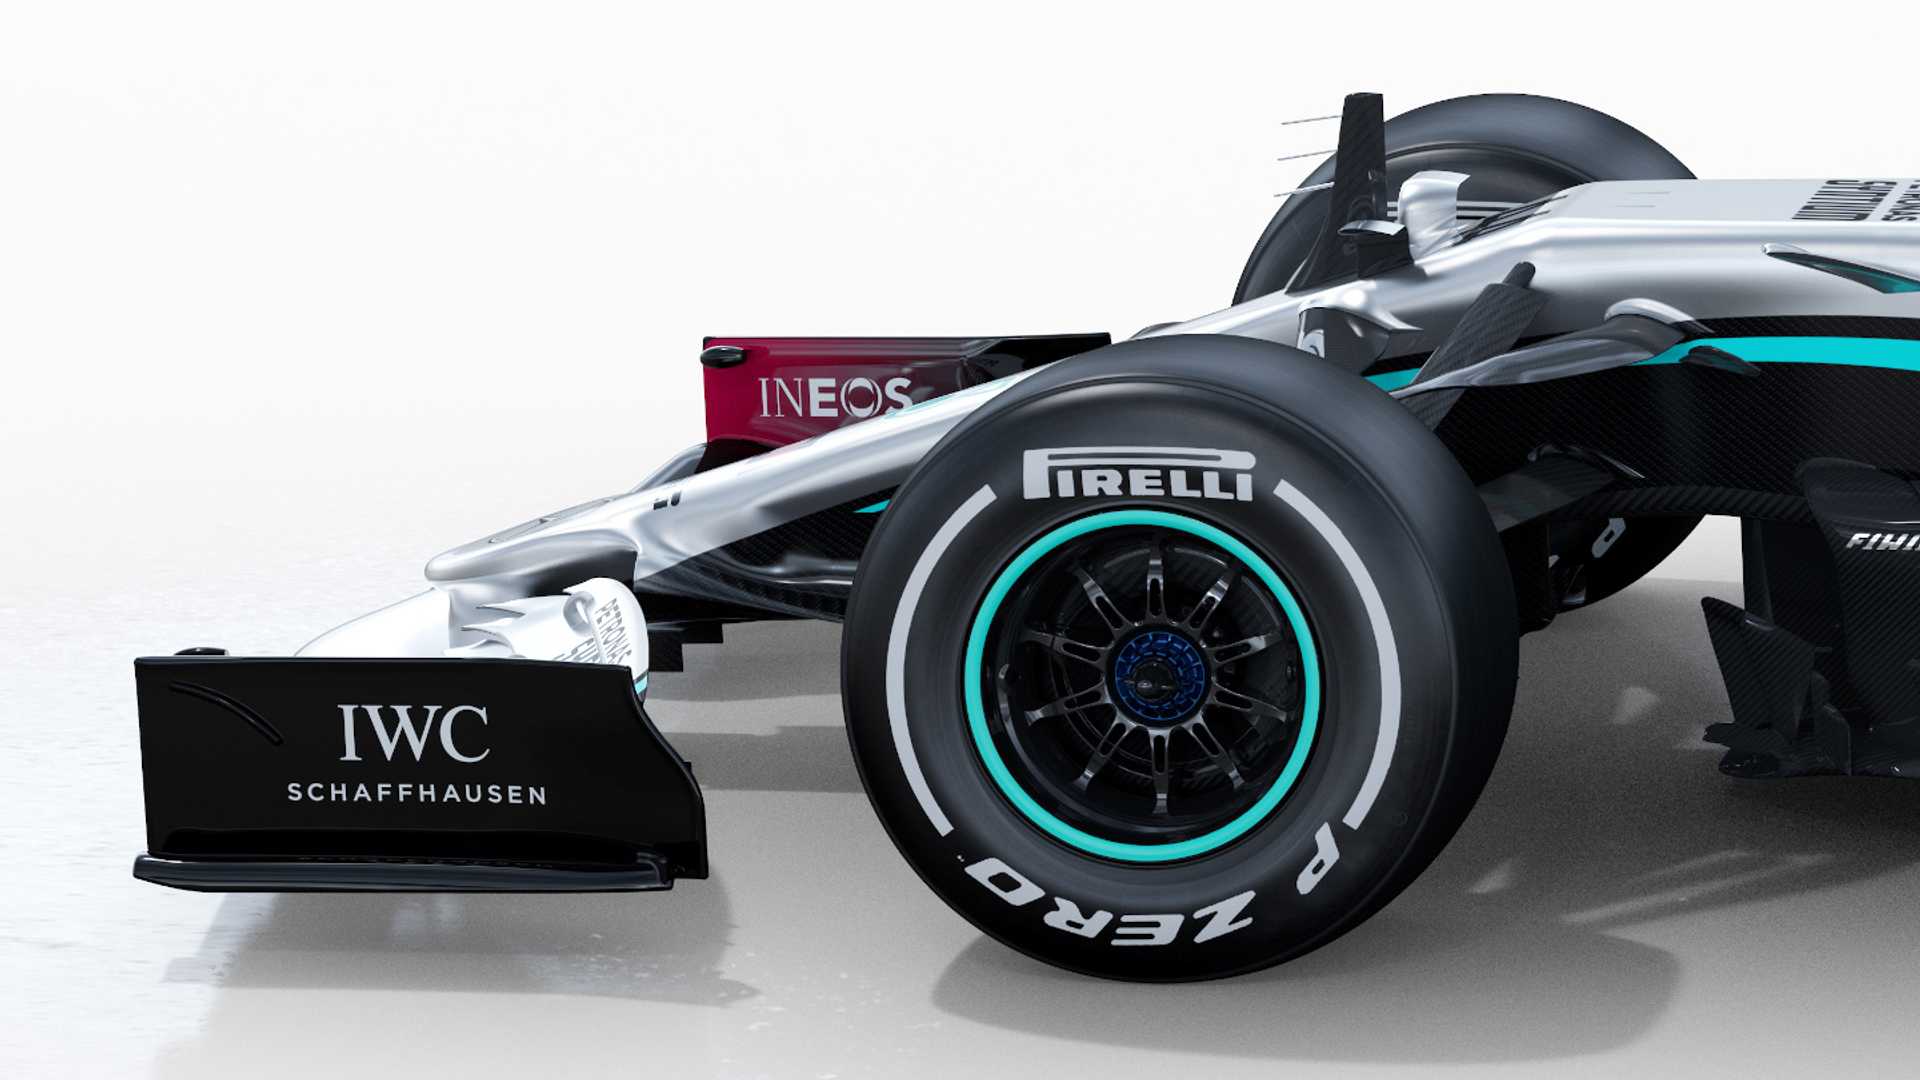 Mercedes launches its 2020 Formula 1 car